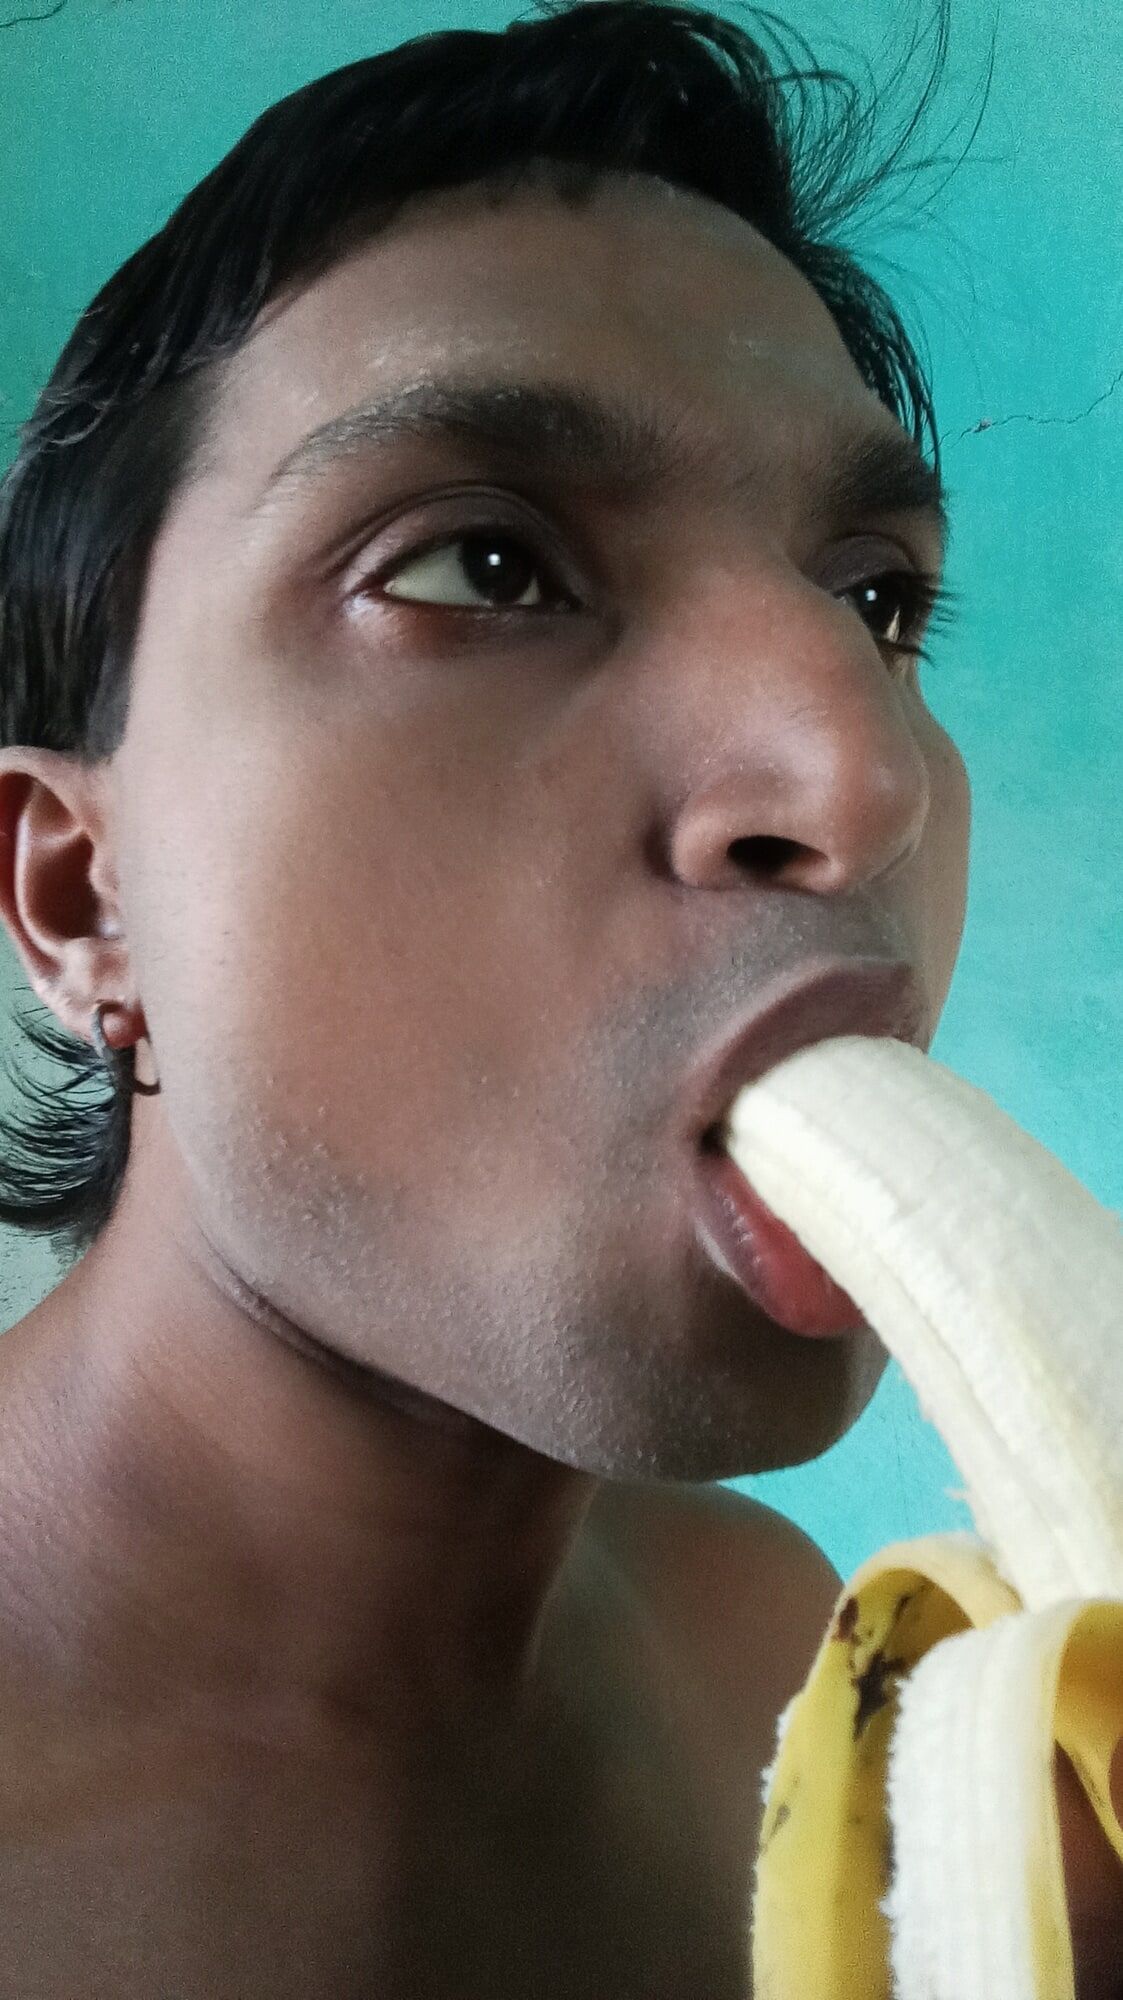  Mukesh Solanki sucking banana #6